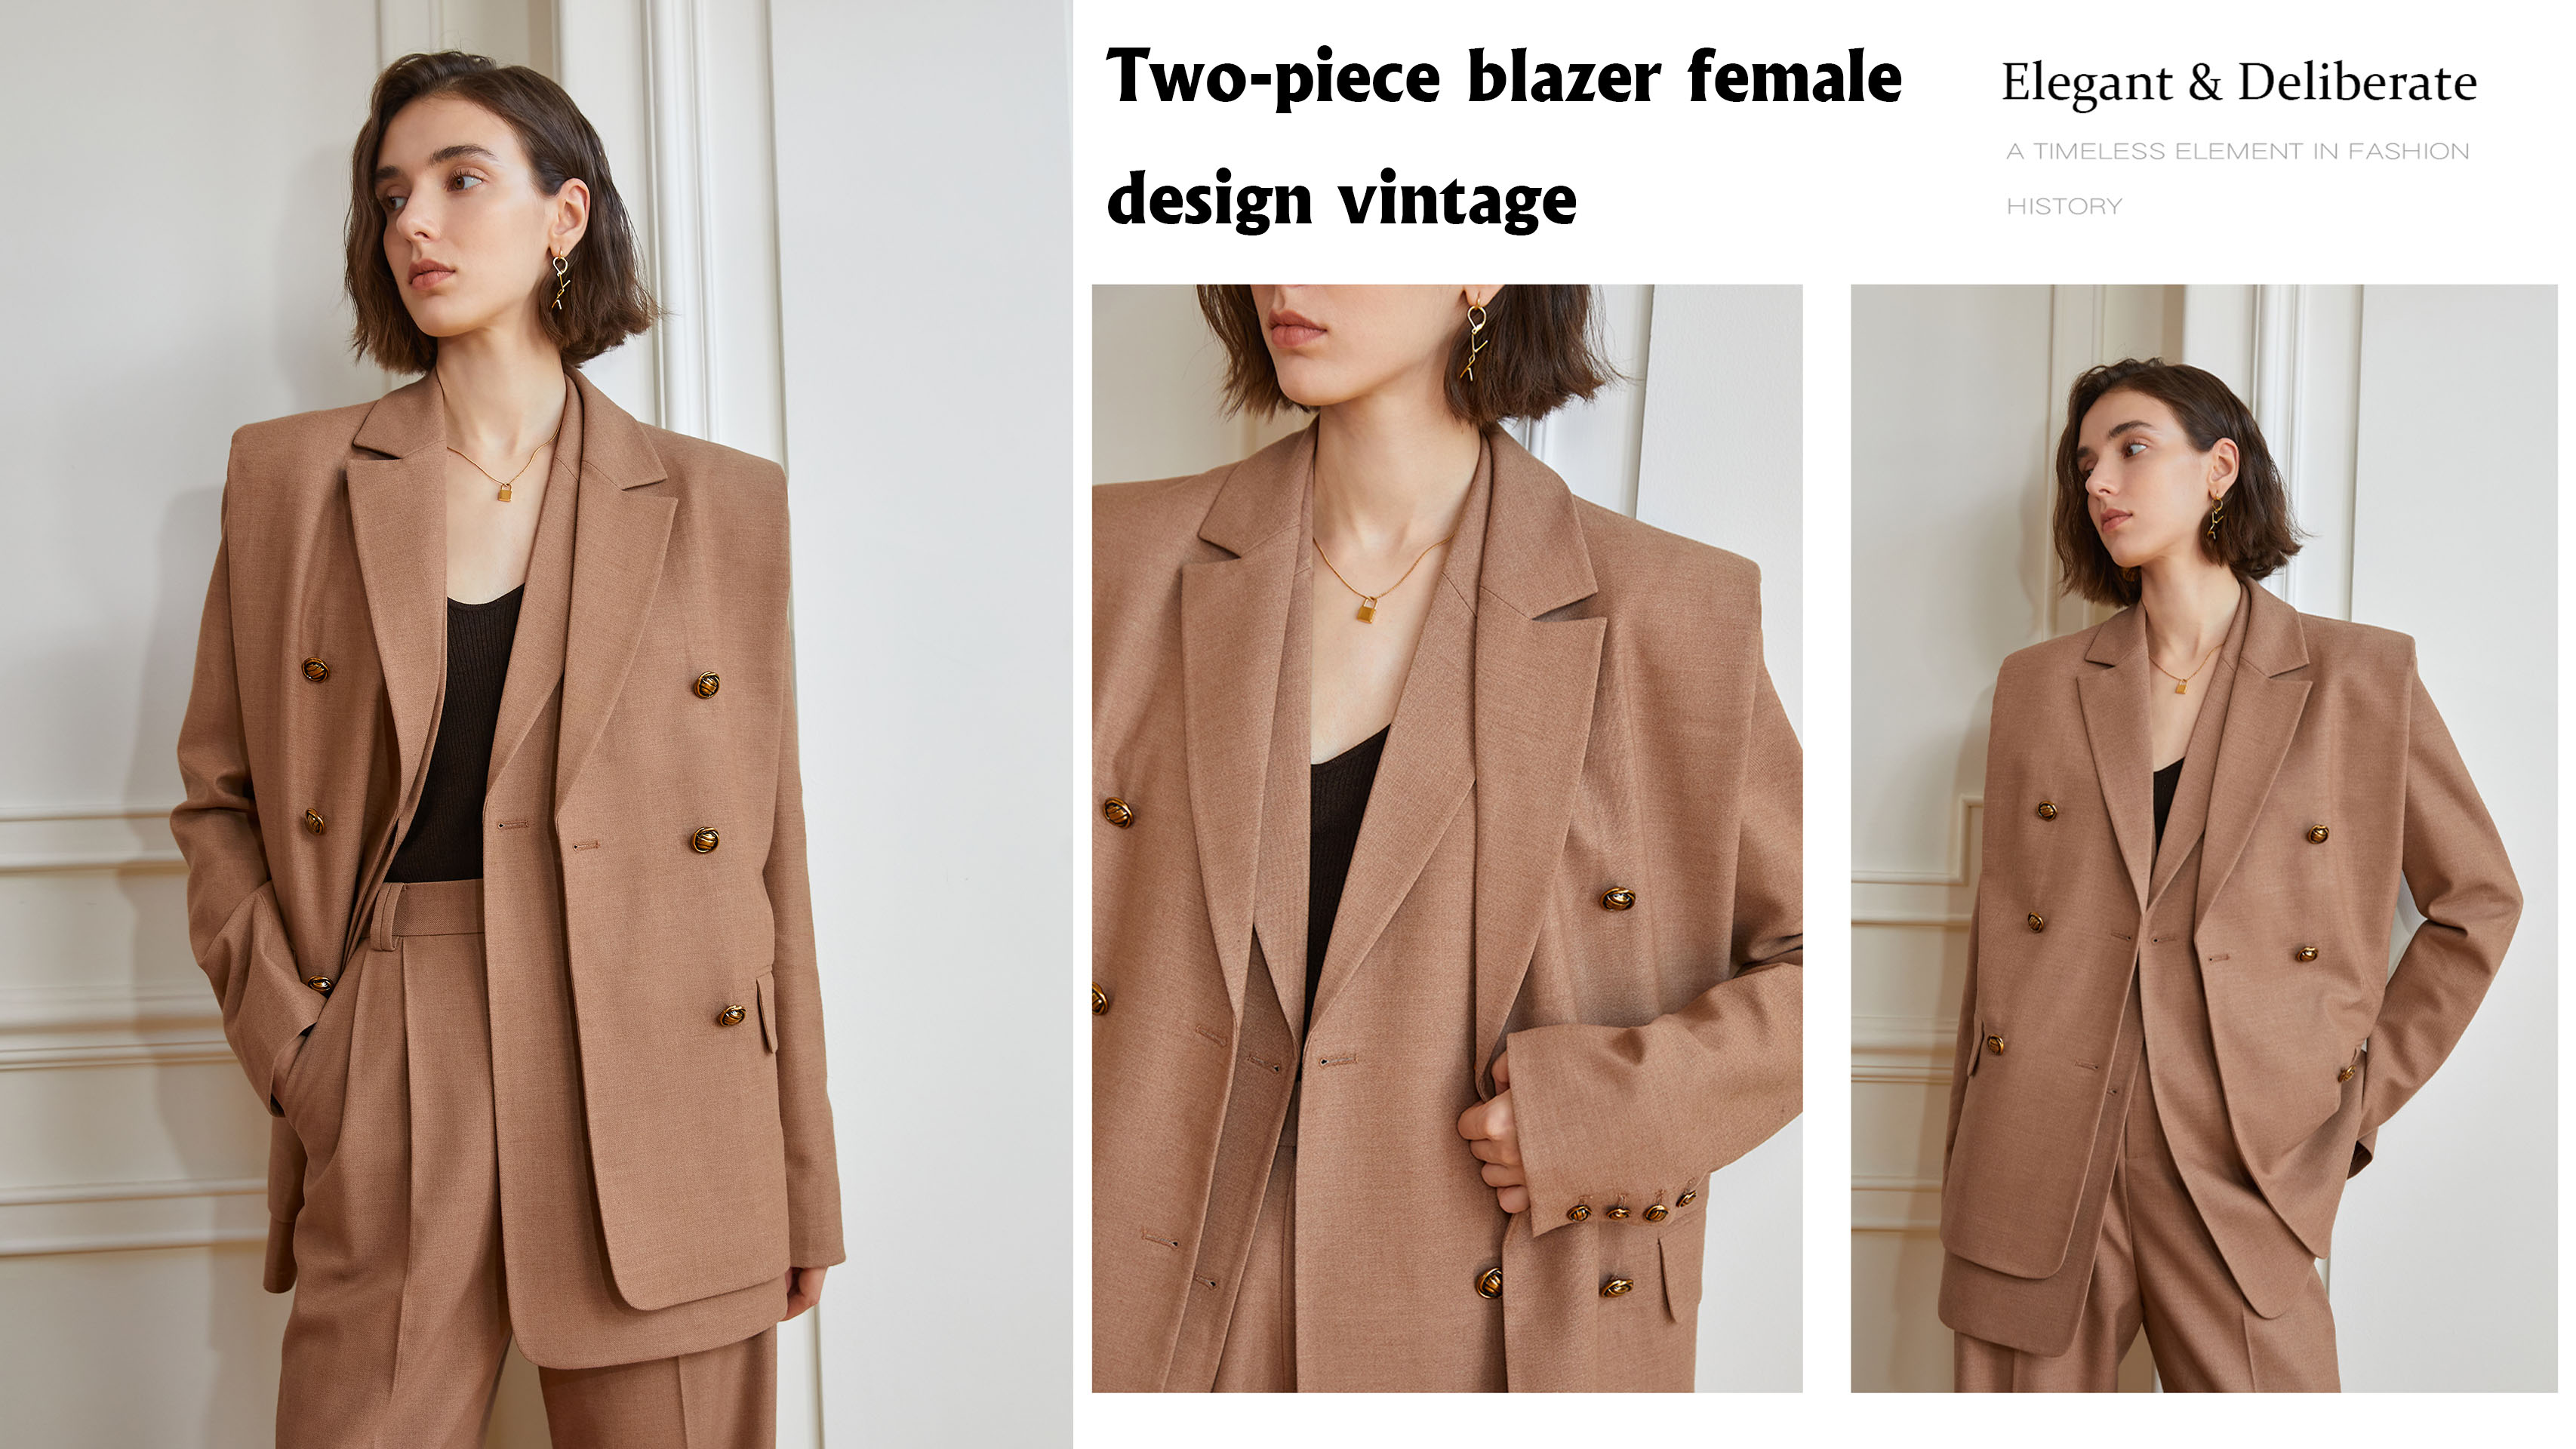 Migliore azienda di blazer in due pezzi dal design vintage femminile – Auschalink